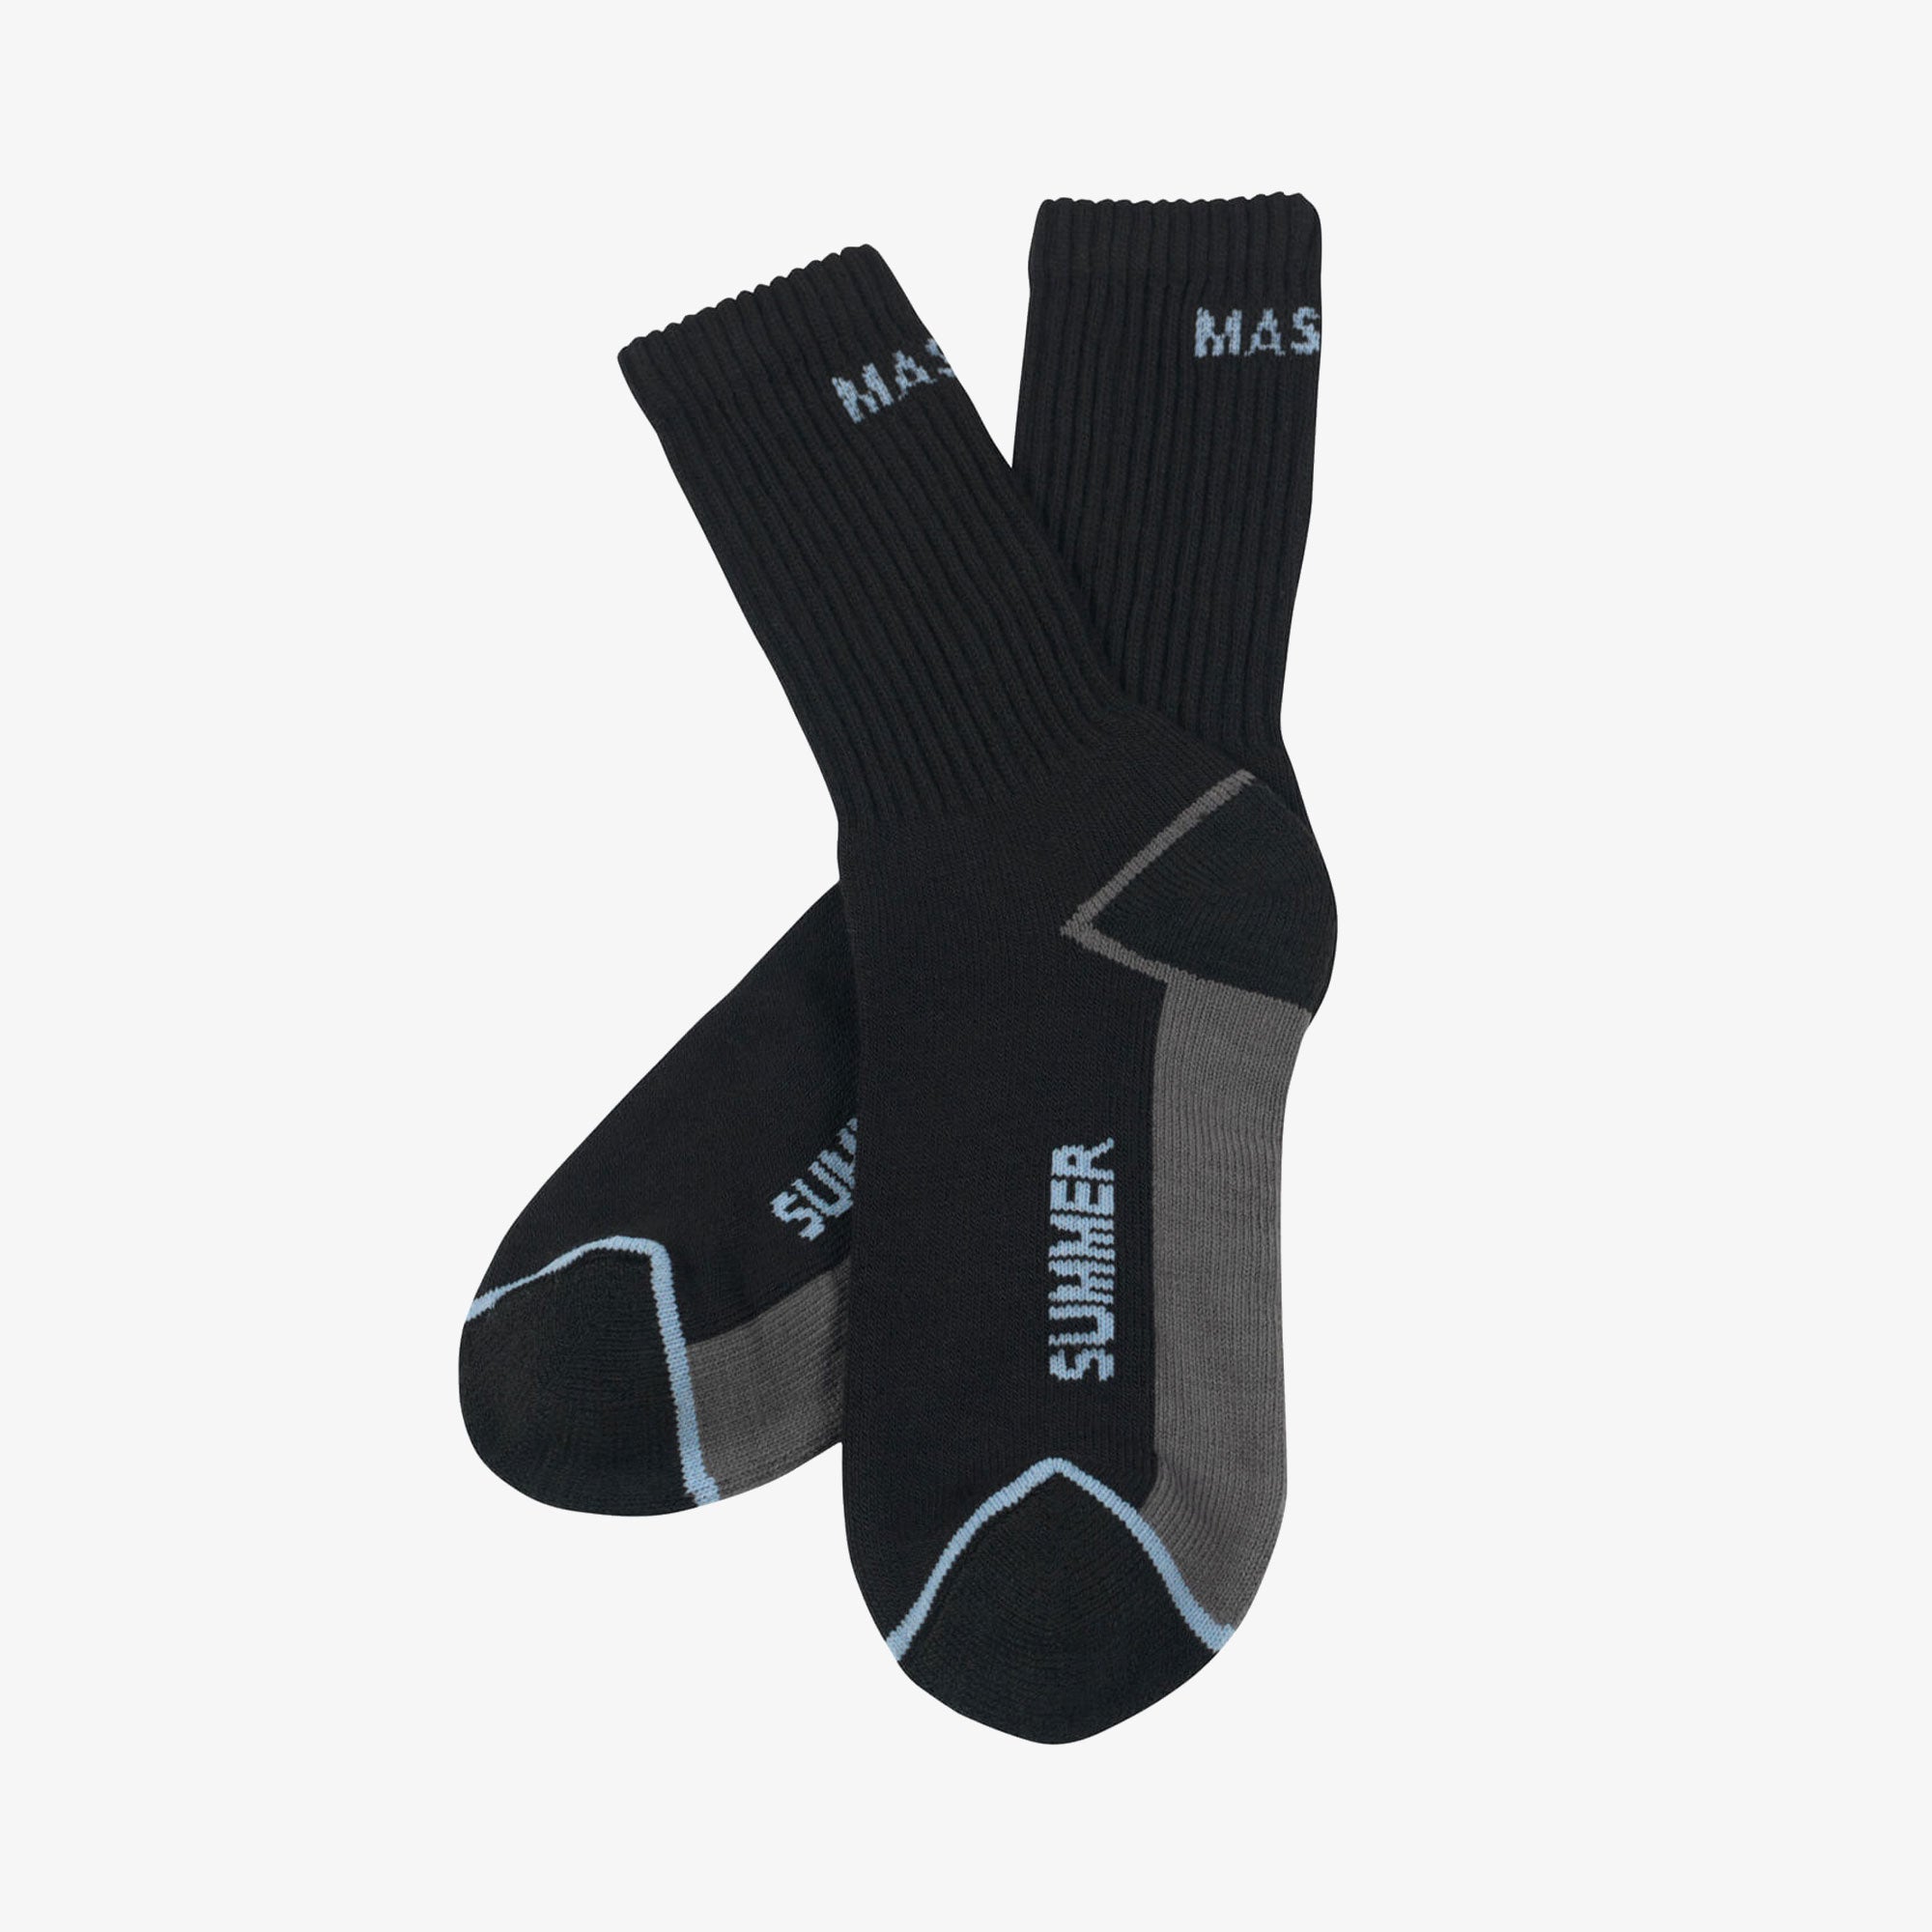 MASCOT Complete 50453-912-09 Manica Ljetne Radne čarape 3 para komplet